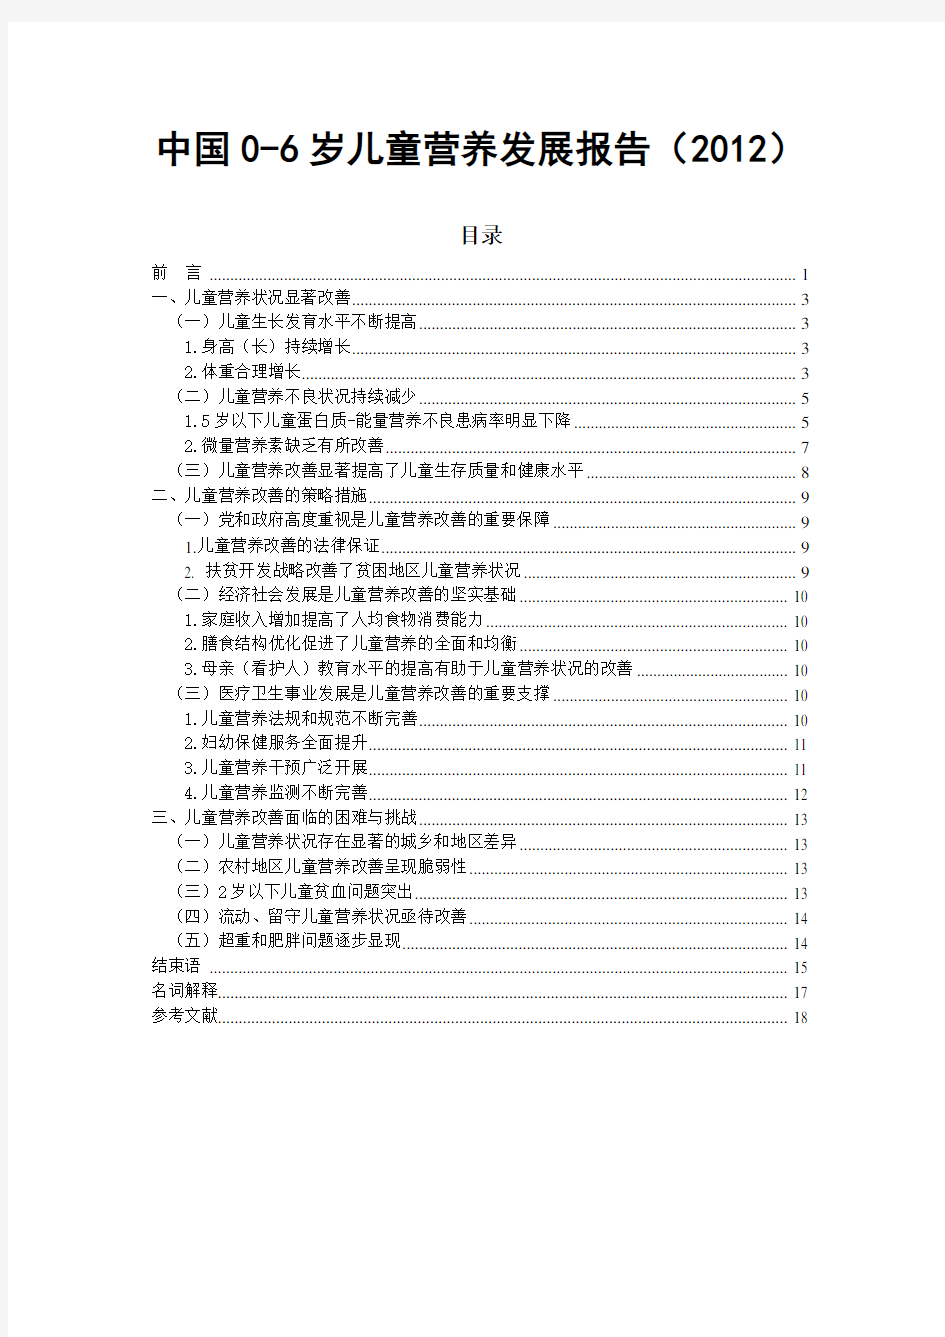 中国0—6岁儿童营养发展报告(2012)全文